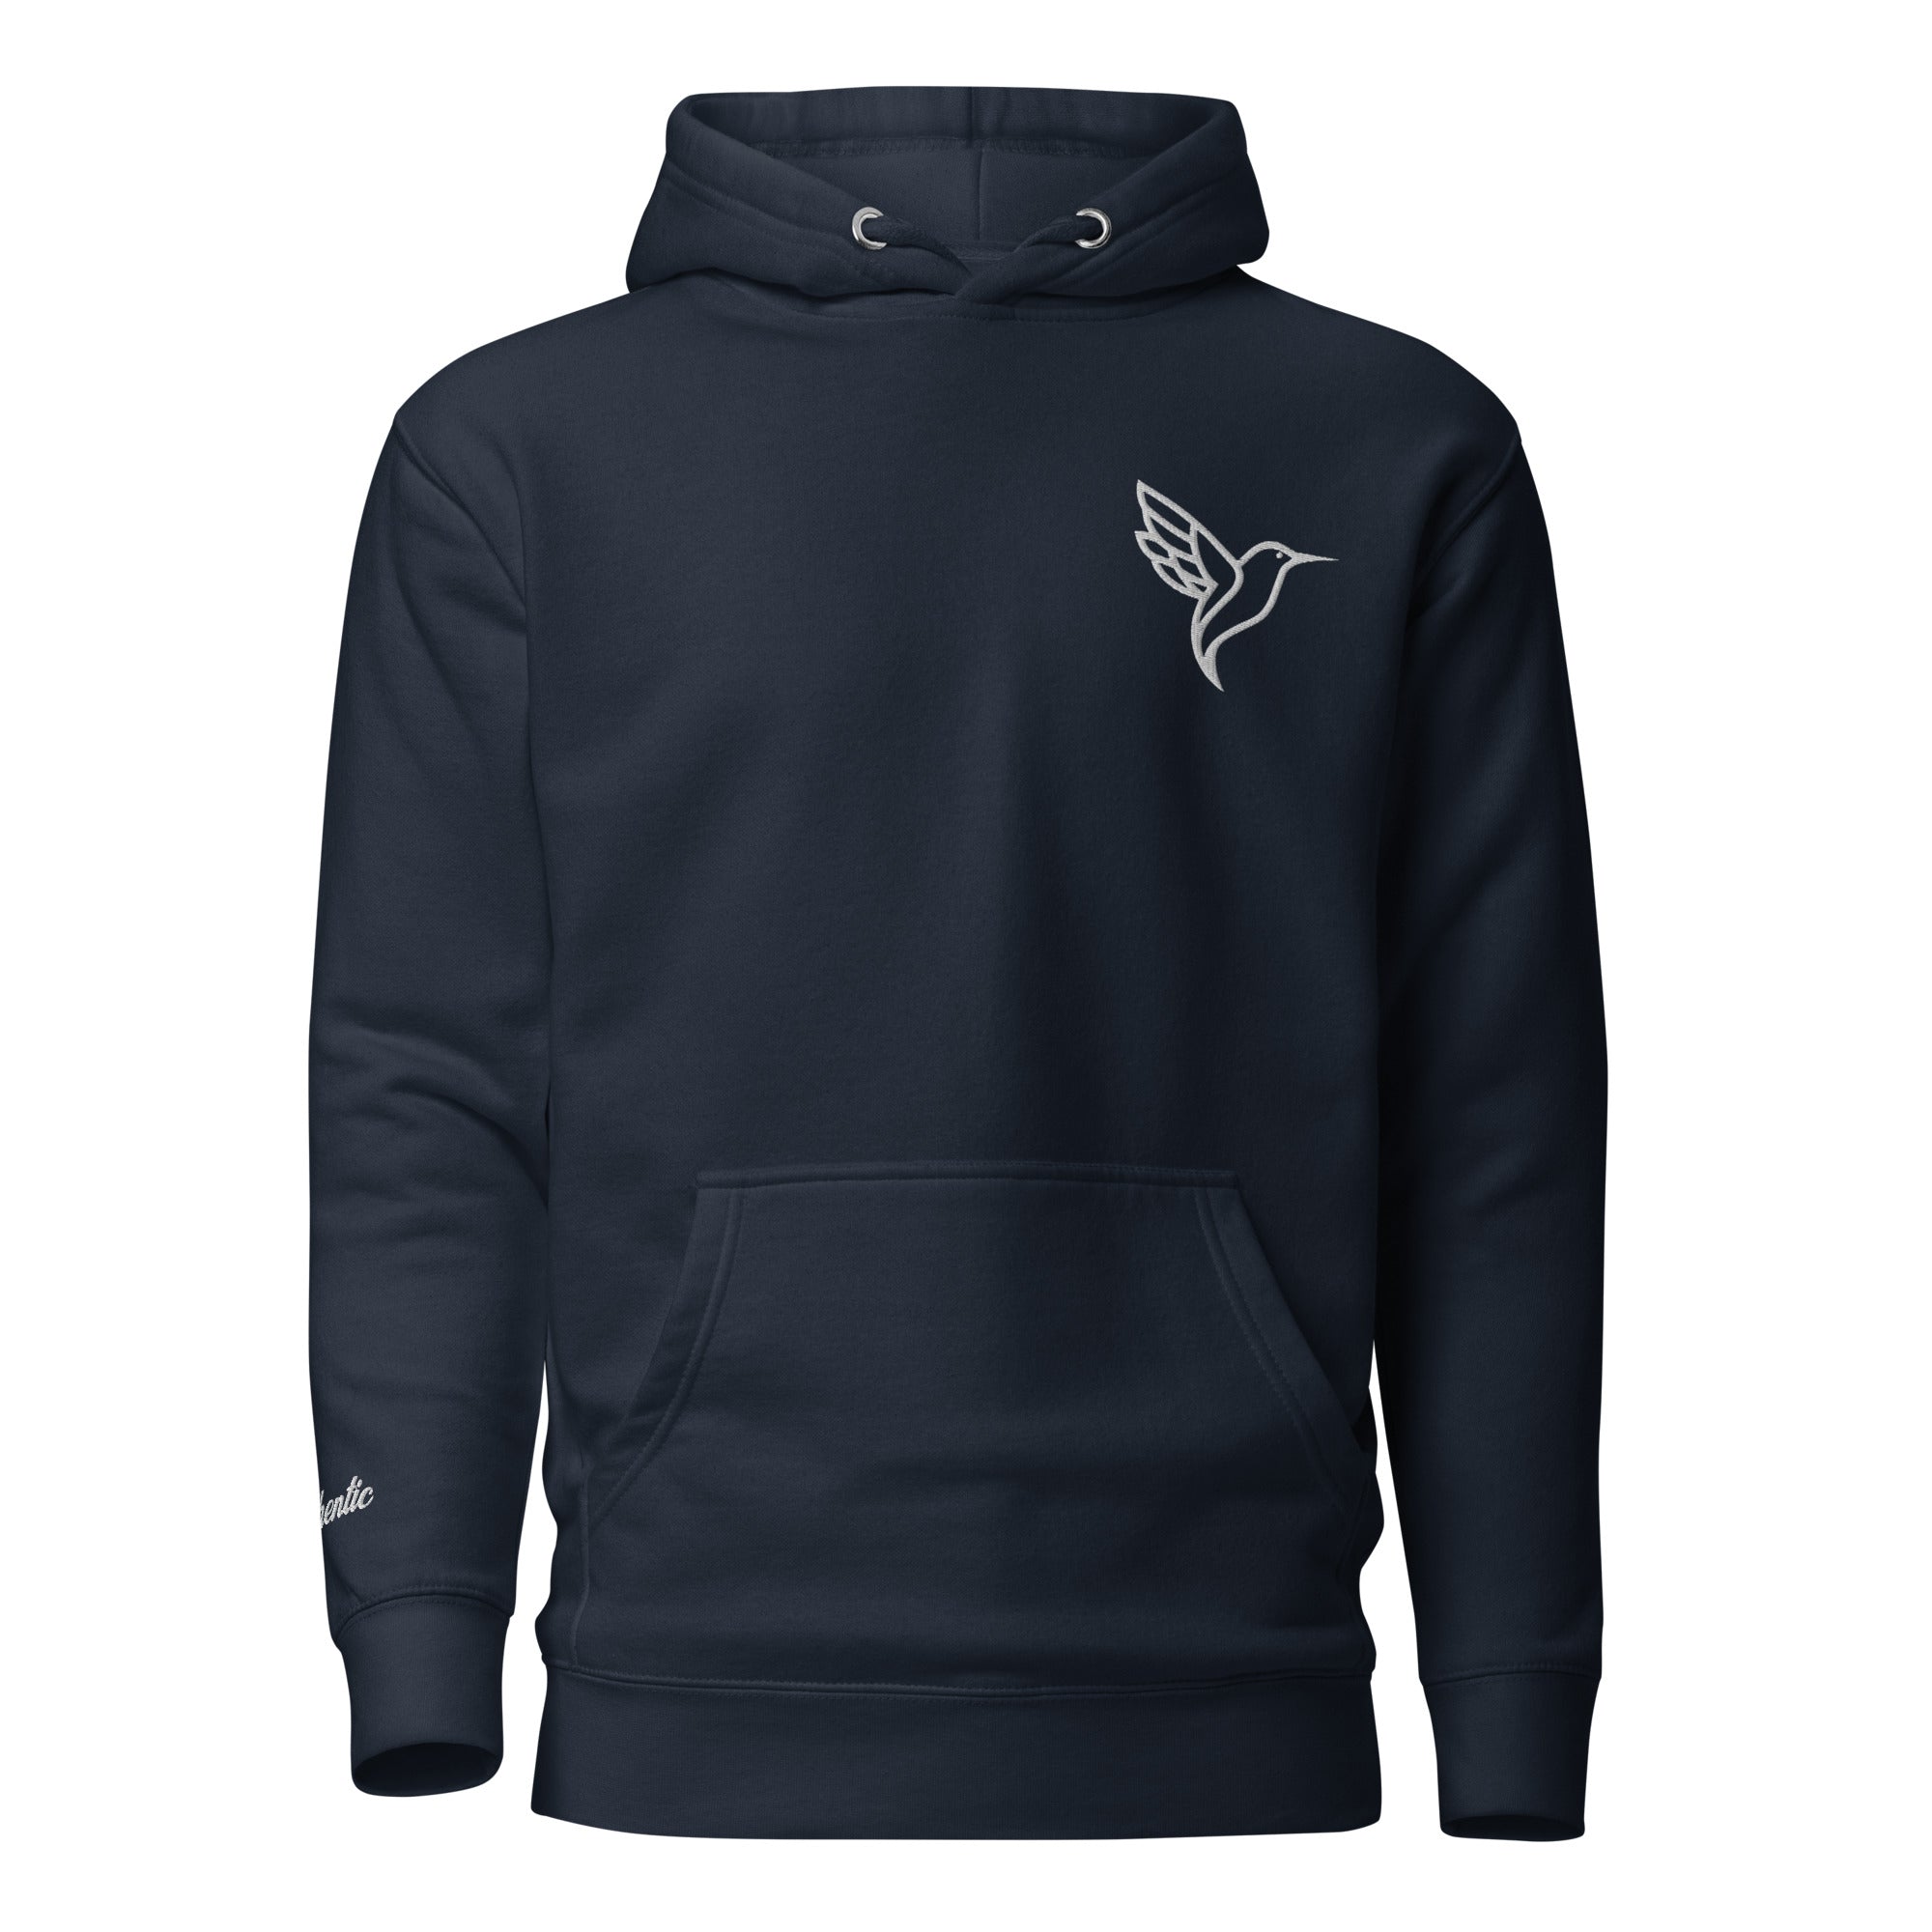 unisex-premium-hoodie-navy-blazer-front-631fd6febcf11.jpg